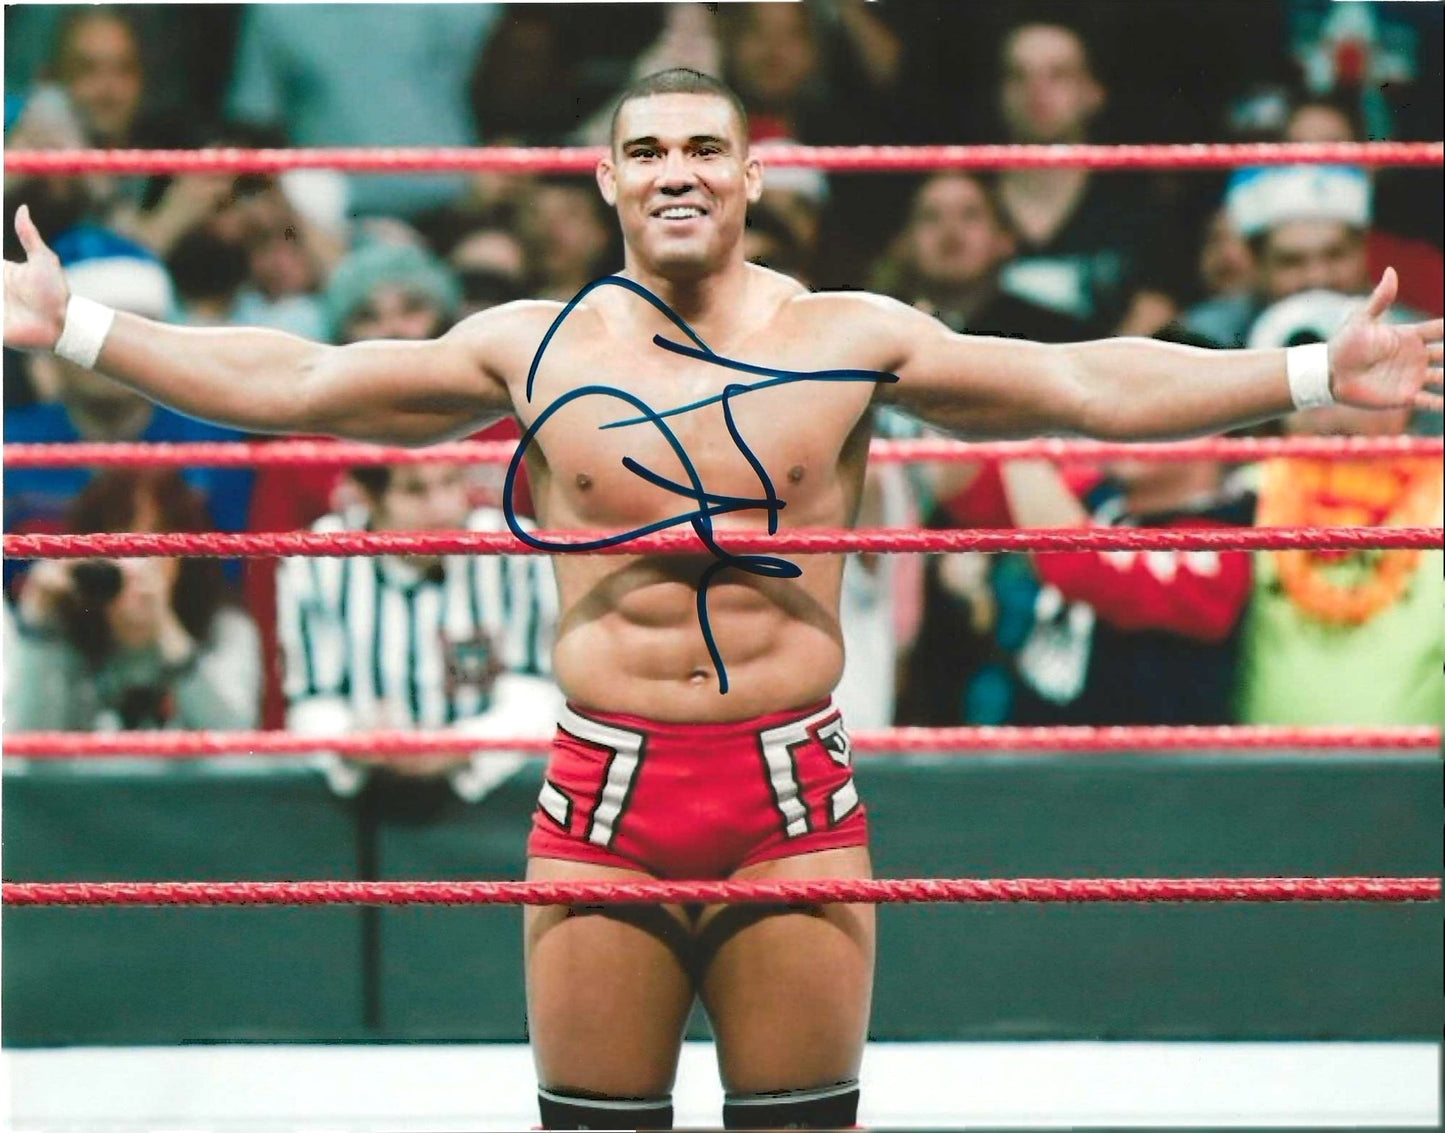 Jason Jordon Autographed Signed "WWE" 8X10 Photo Elite Promotions & Graphz Authentication